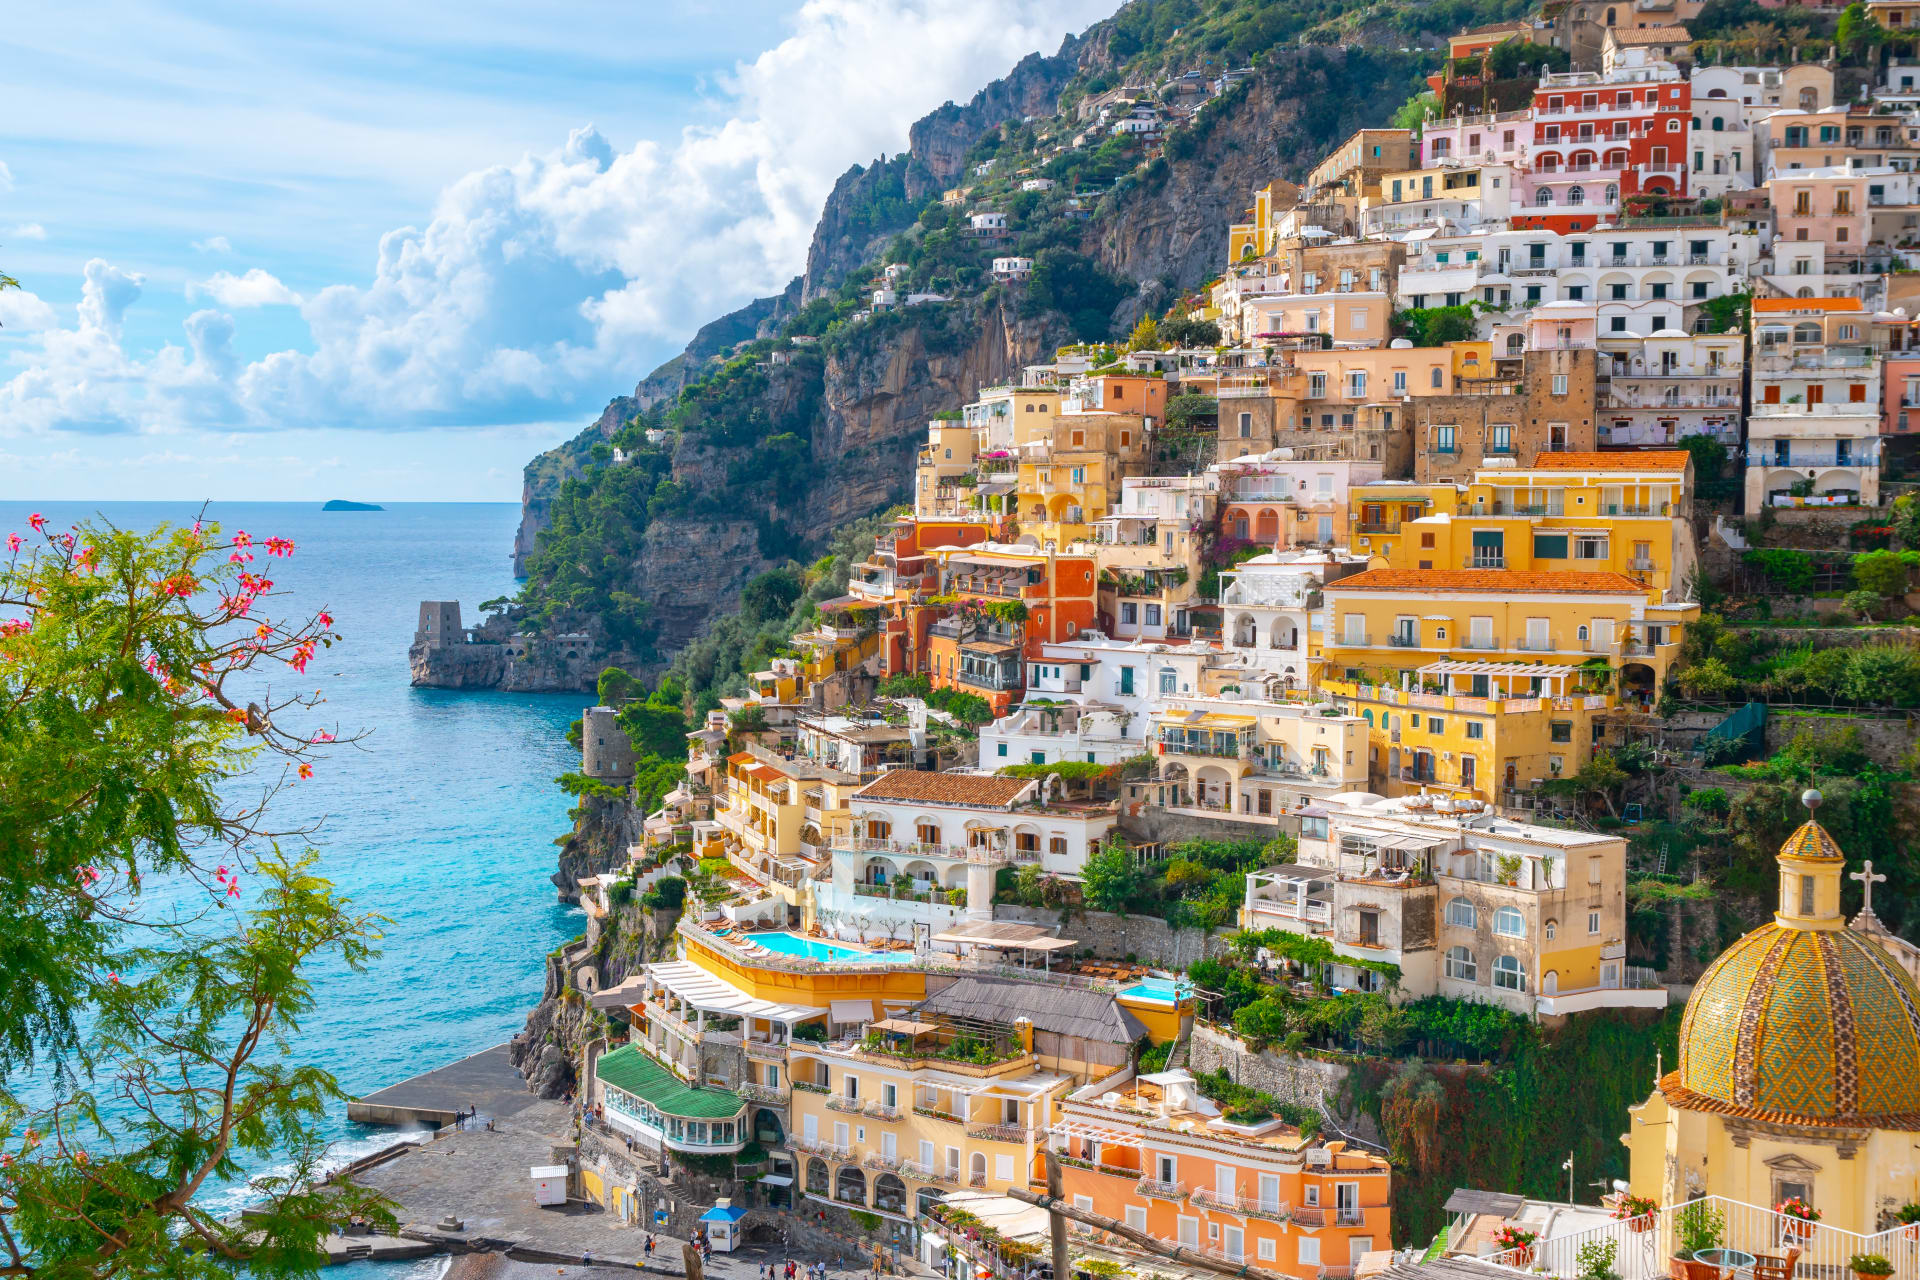 Positano: Thành phố biển thu hút hàng đầu tại Ý